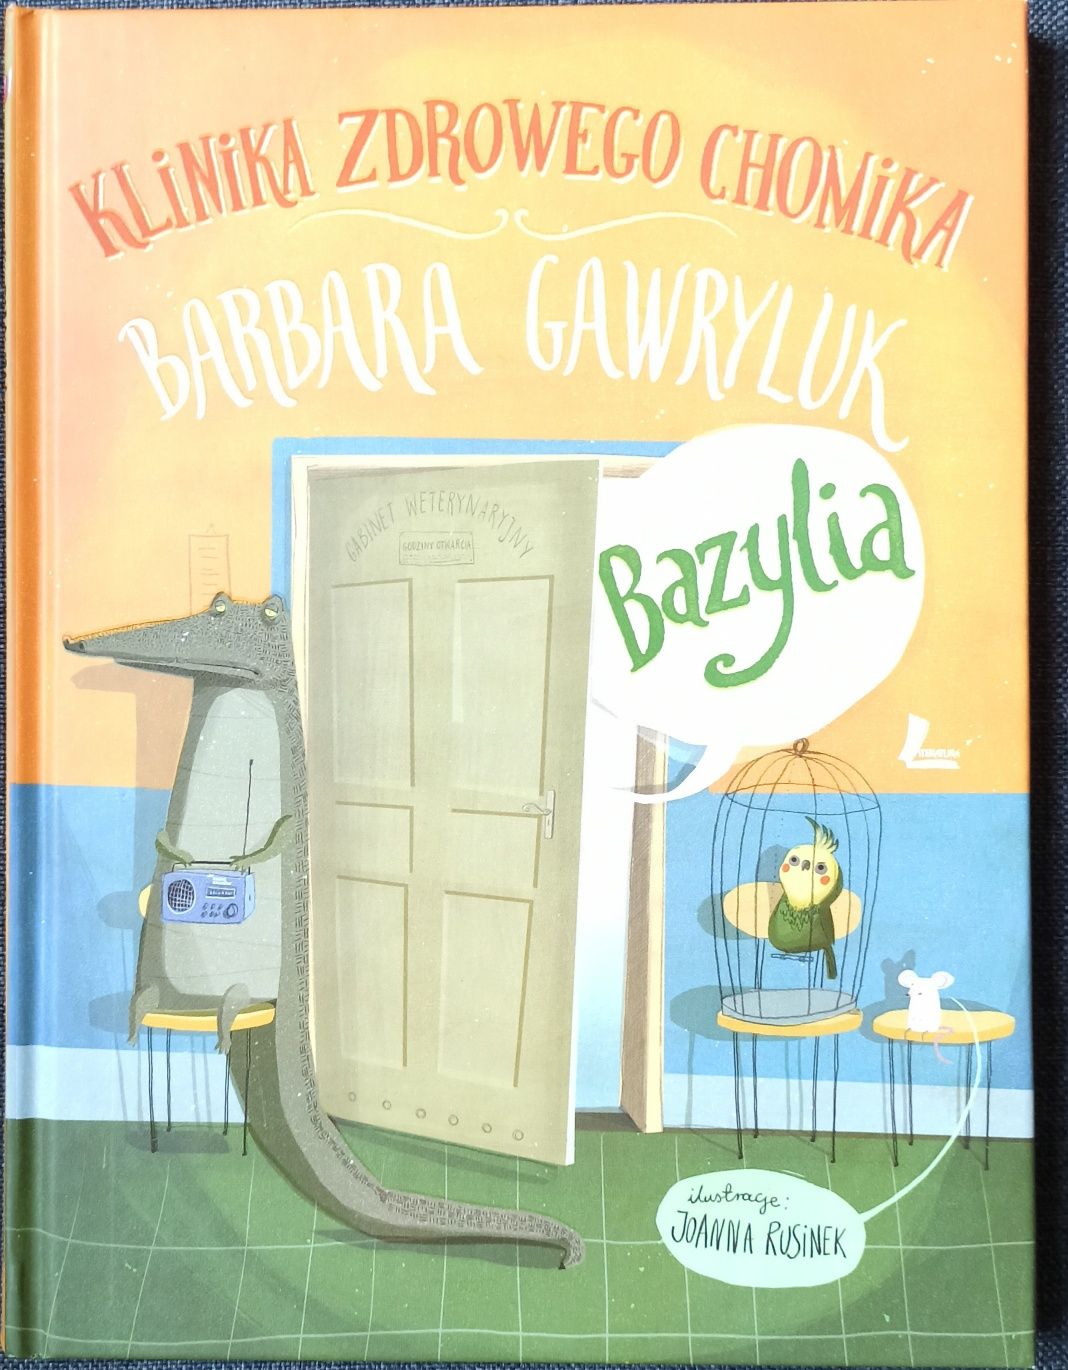 Klinika zdrowego chomika Bazylia Barbara Gawryluk